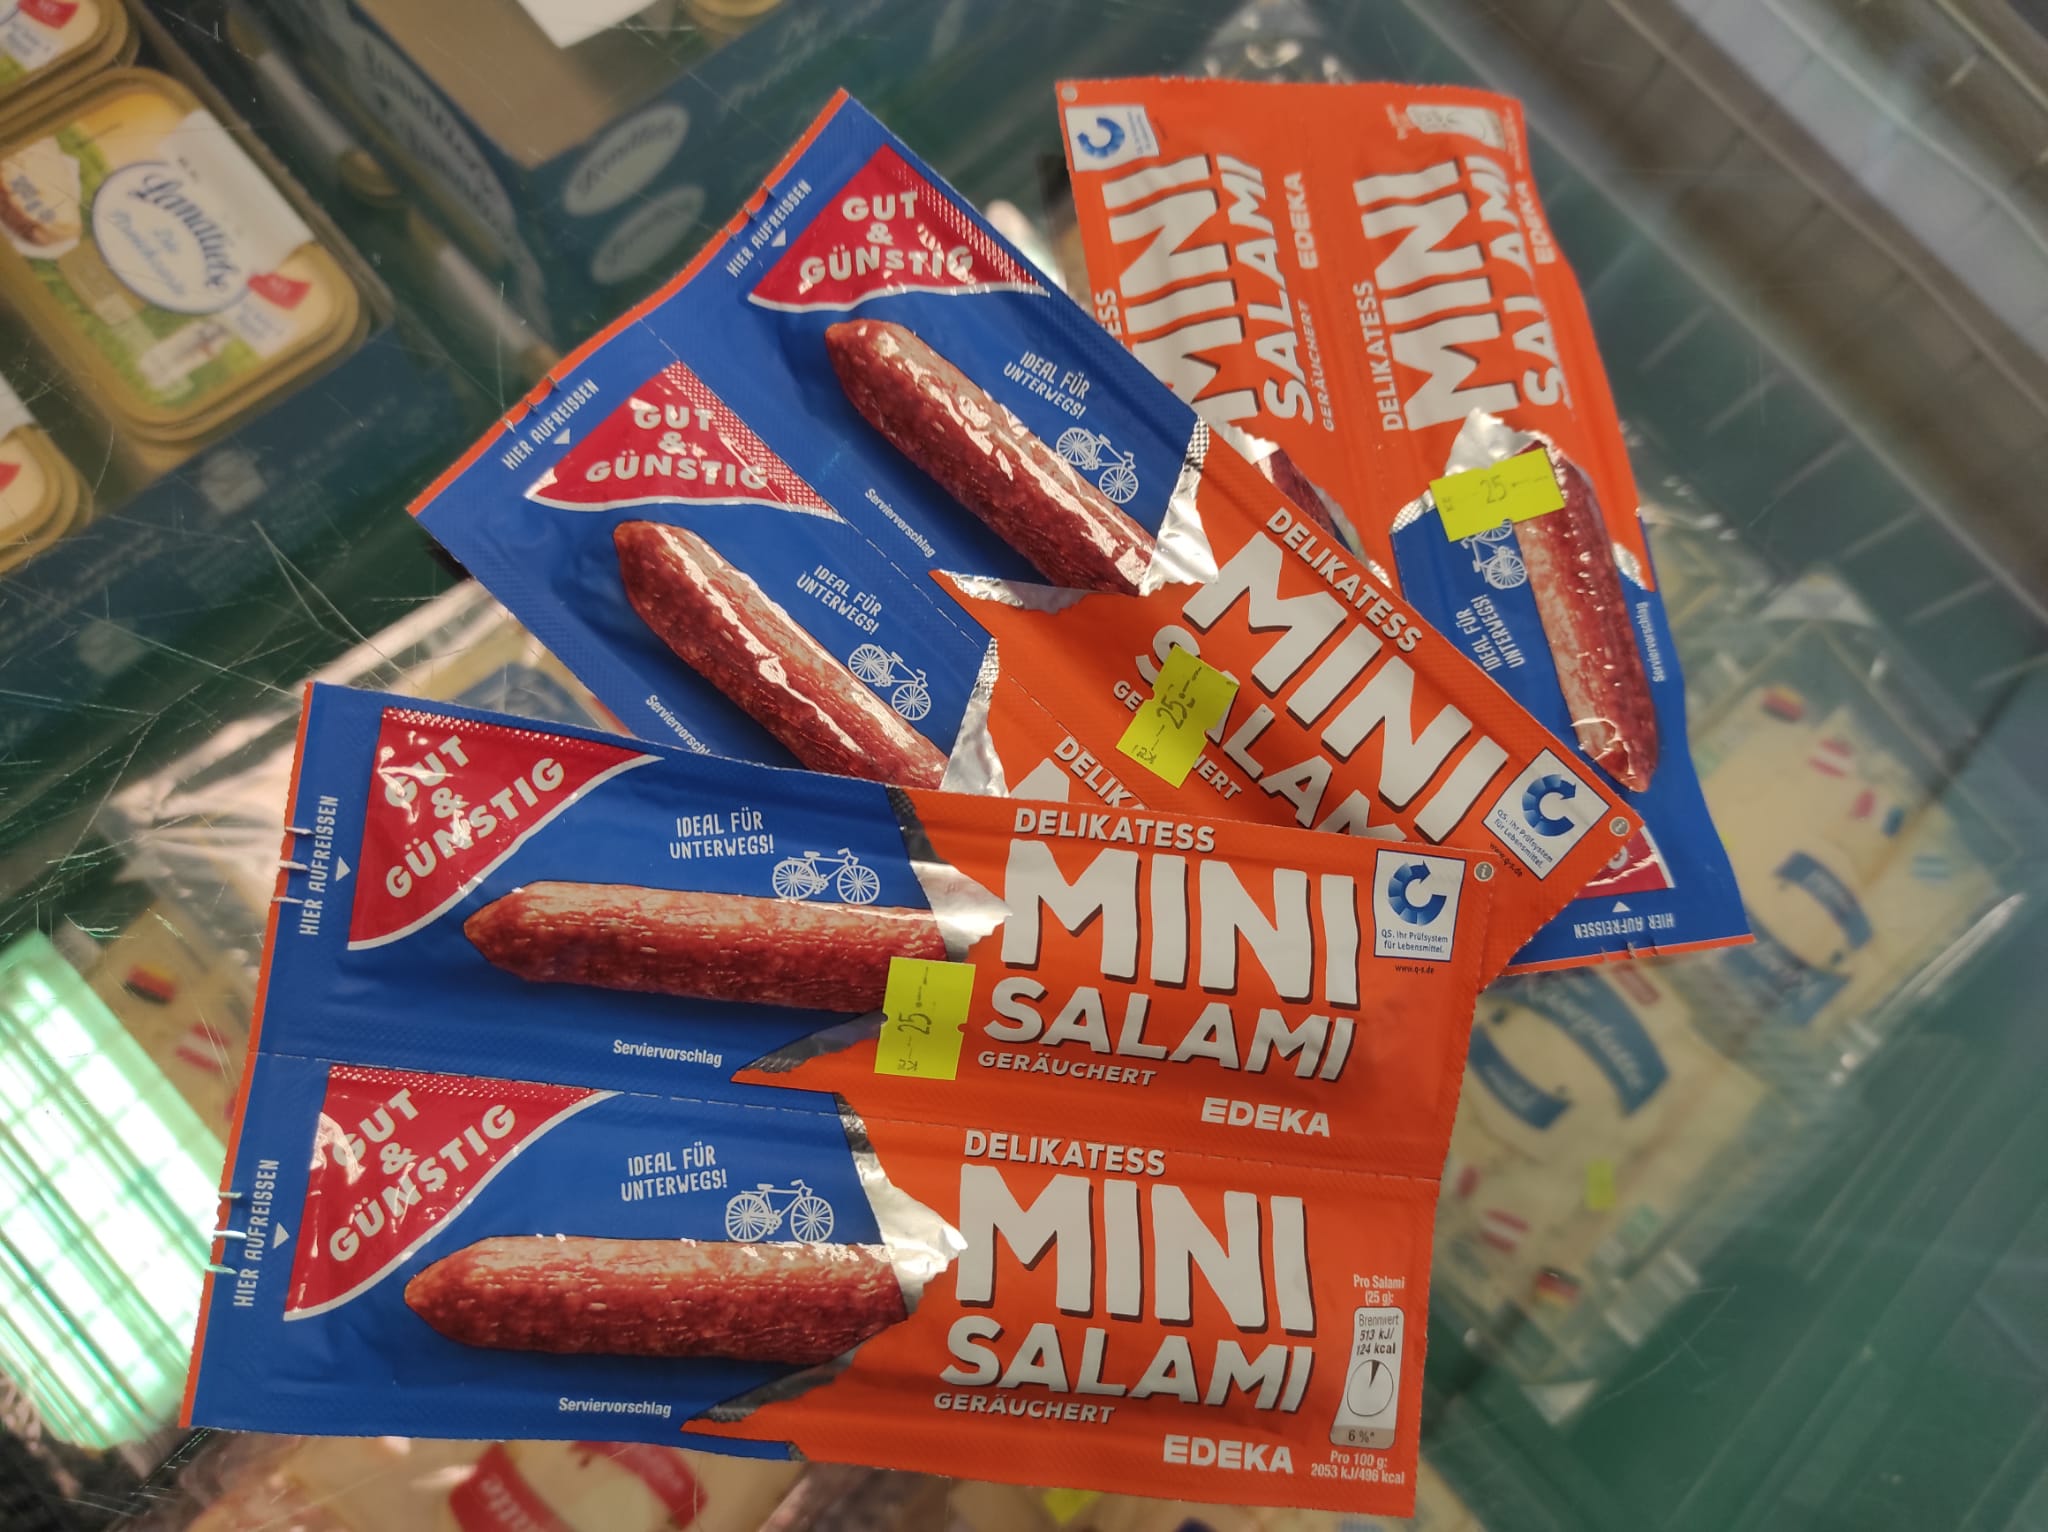 Mini Salami